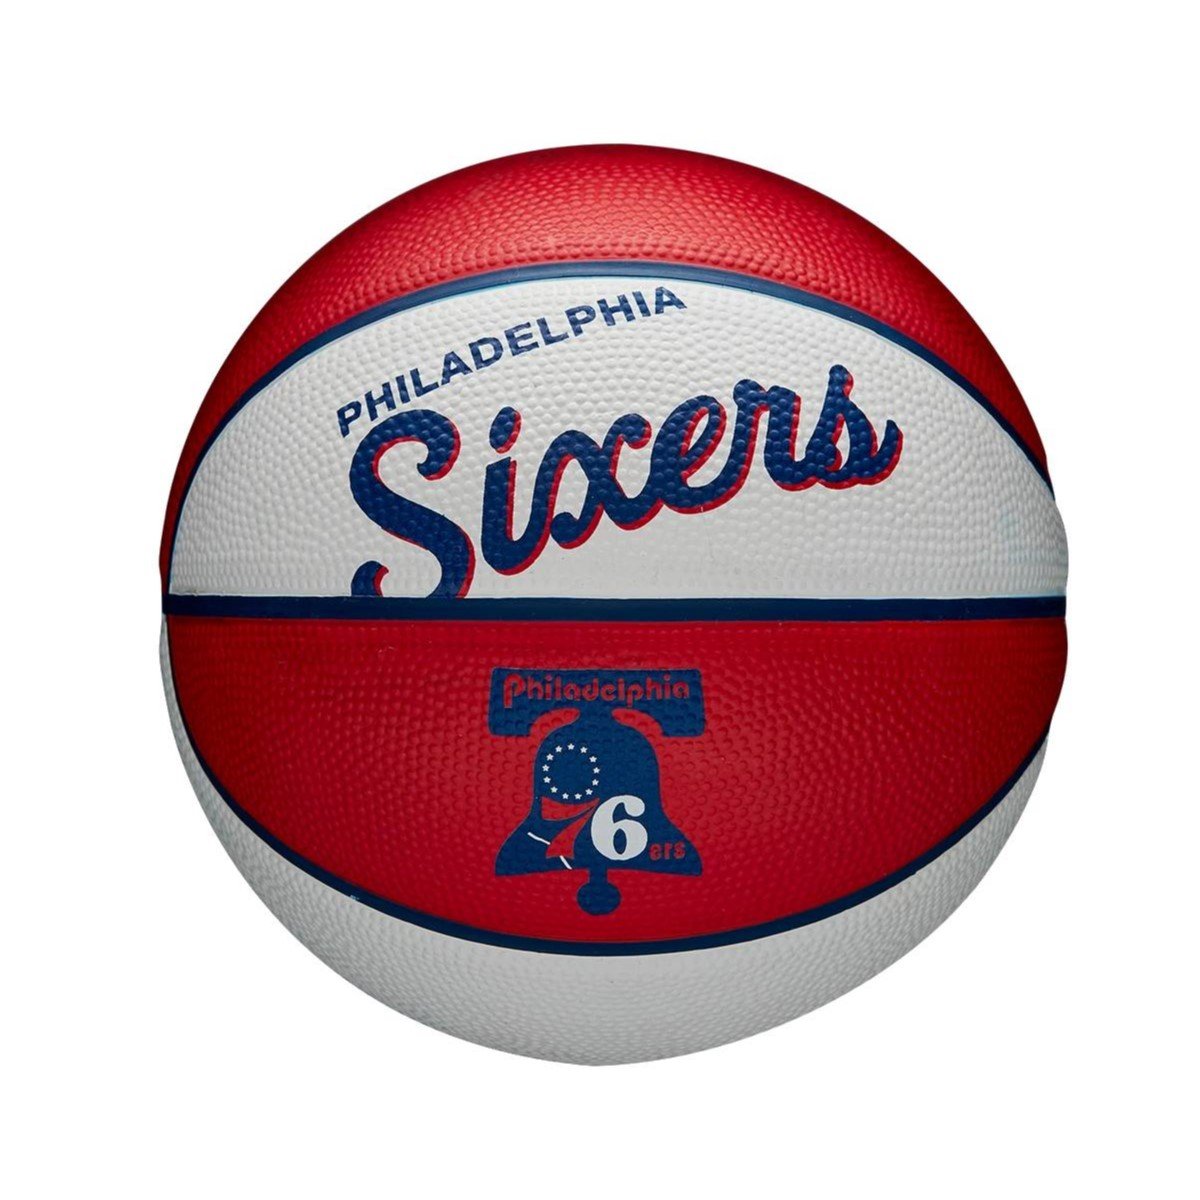 Zdjęcia - Pozostałe akcesoria Wilson Mini Piłka koszykarska  NBA Philadelphia 76ers - WTB3200XBPHI-3 